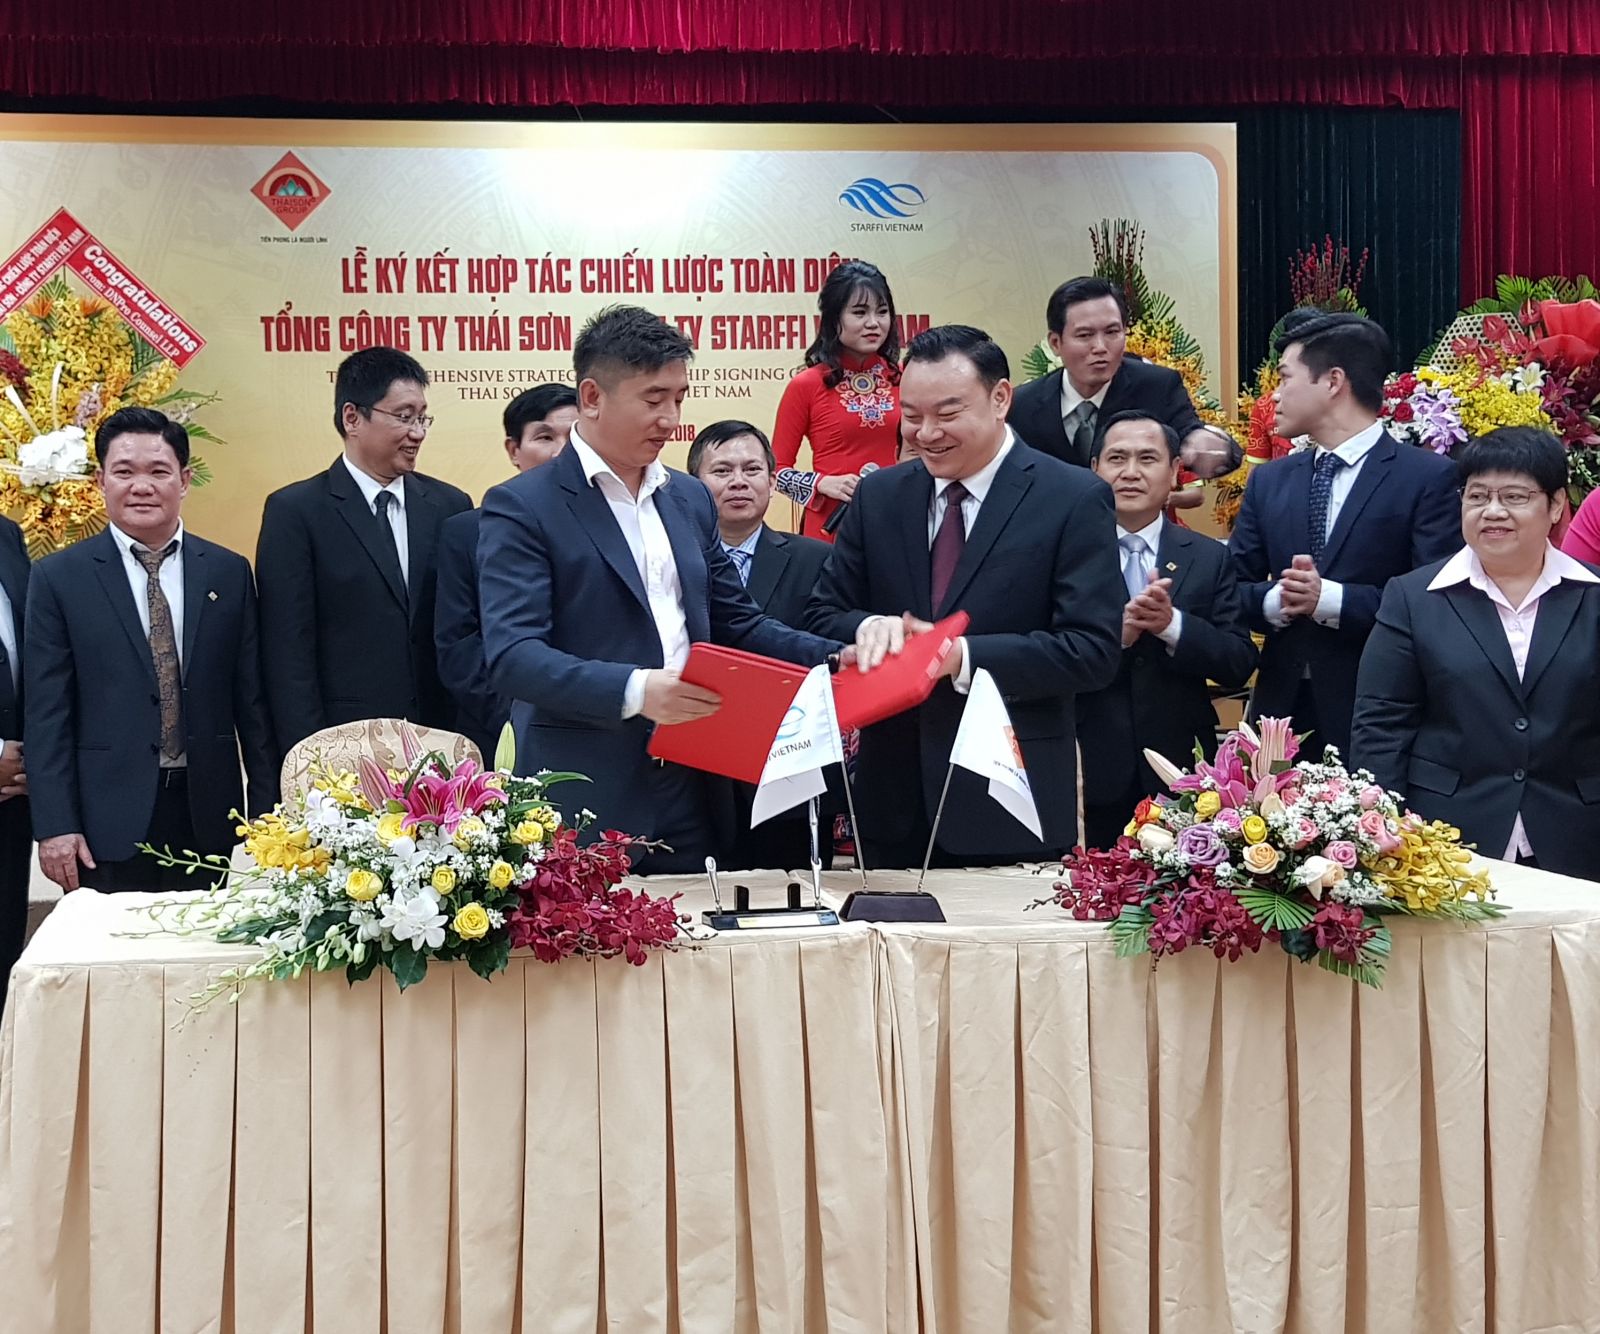 Đại tá Phùng Danh Thắm, Chủ tịch Tổng công ty Thái Sơn cùng đại diện Công ty Starffi Việt Nam ký kết hợp tác.